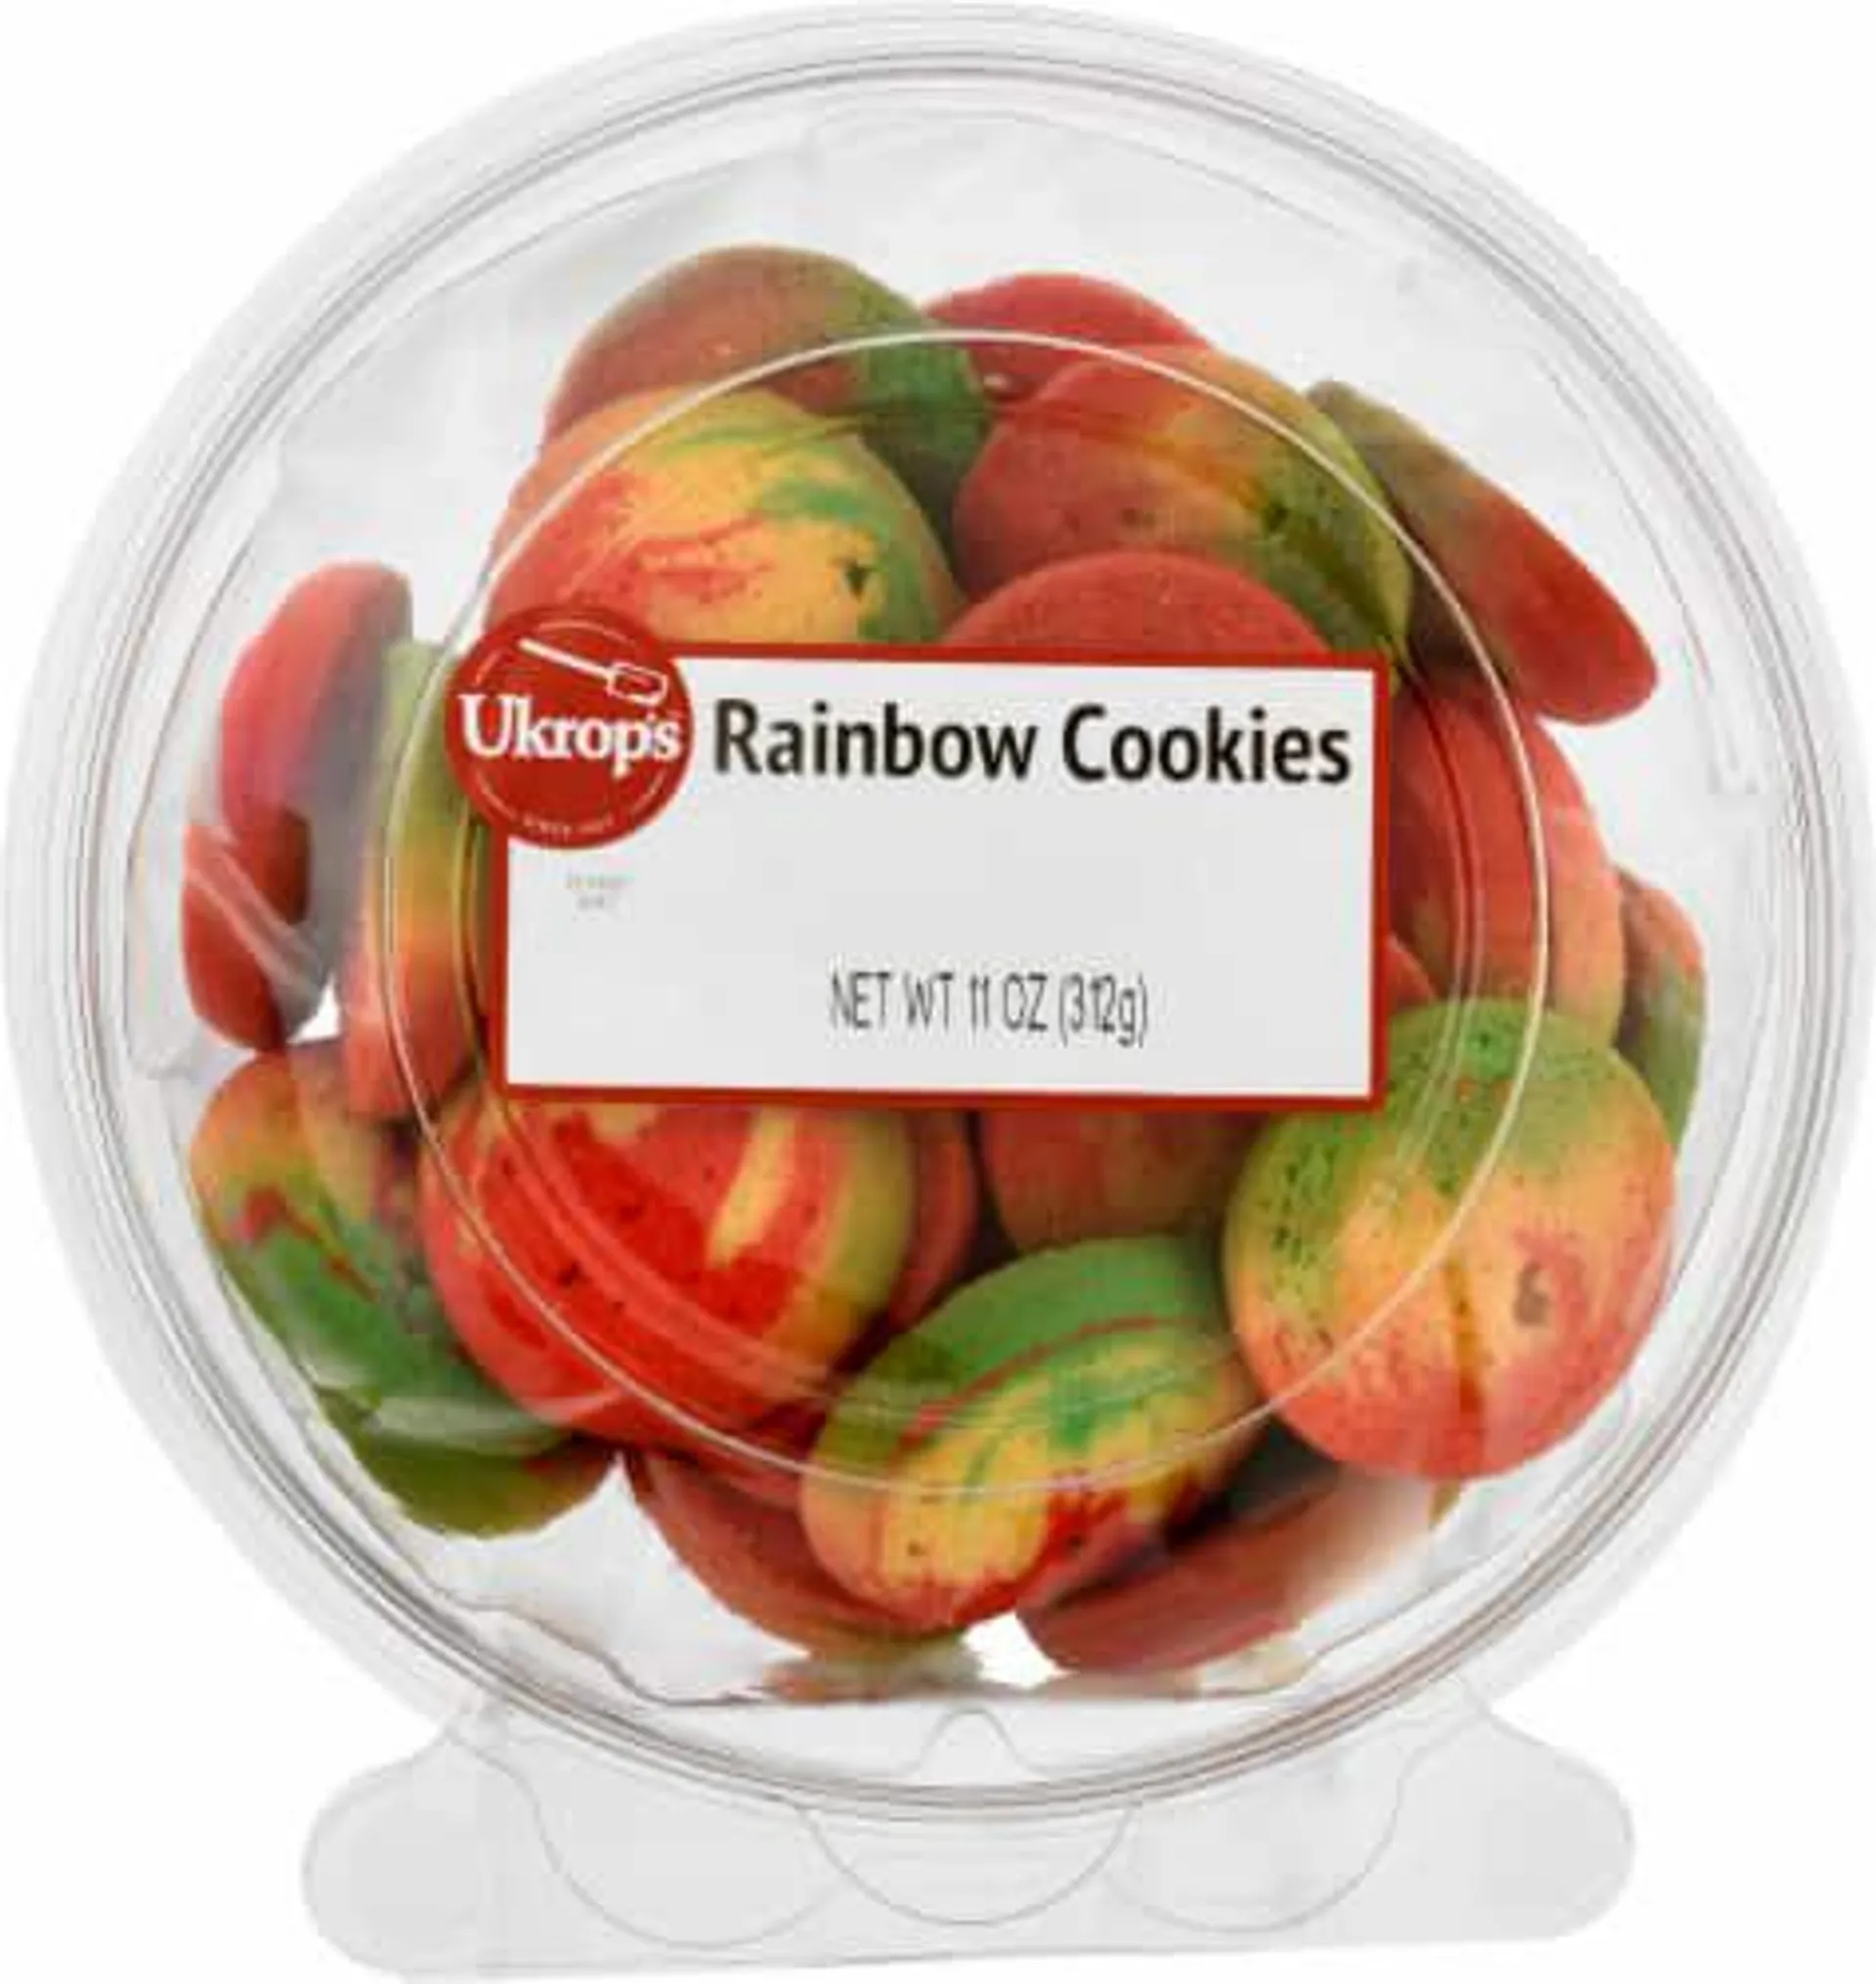 Ukrop's™ Rainbow Cookies